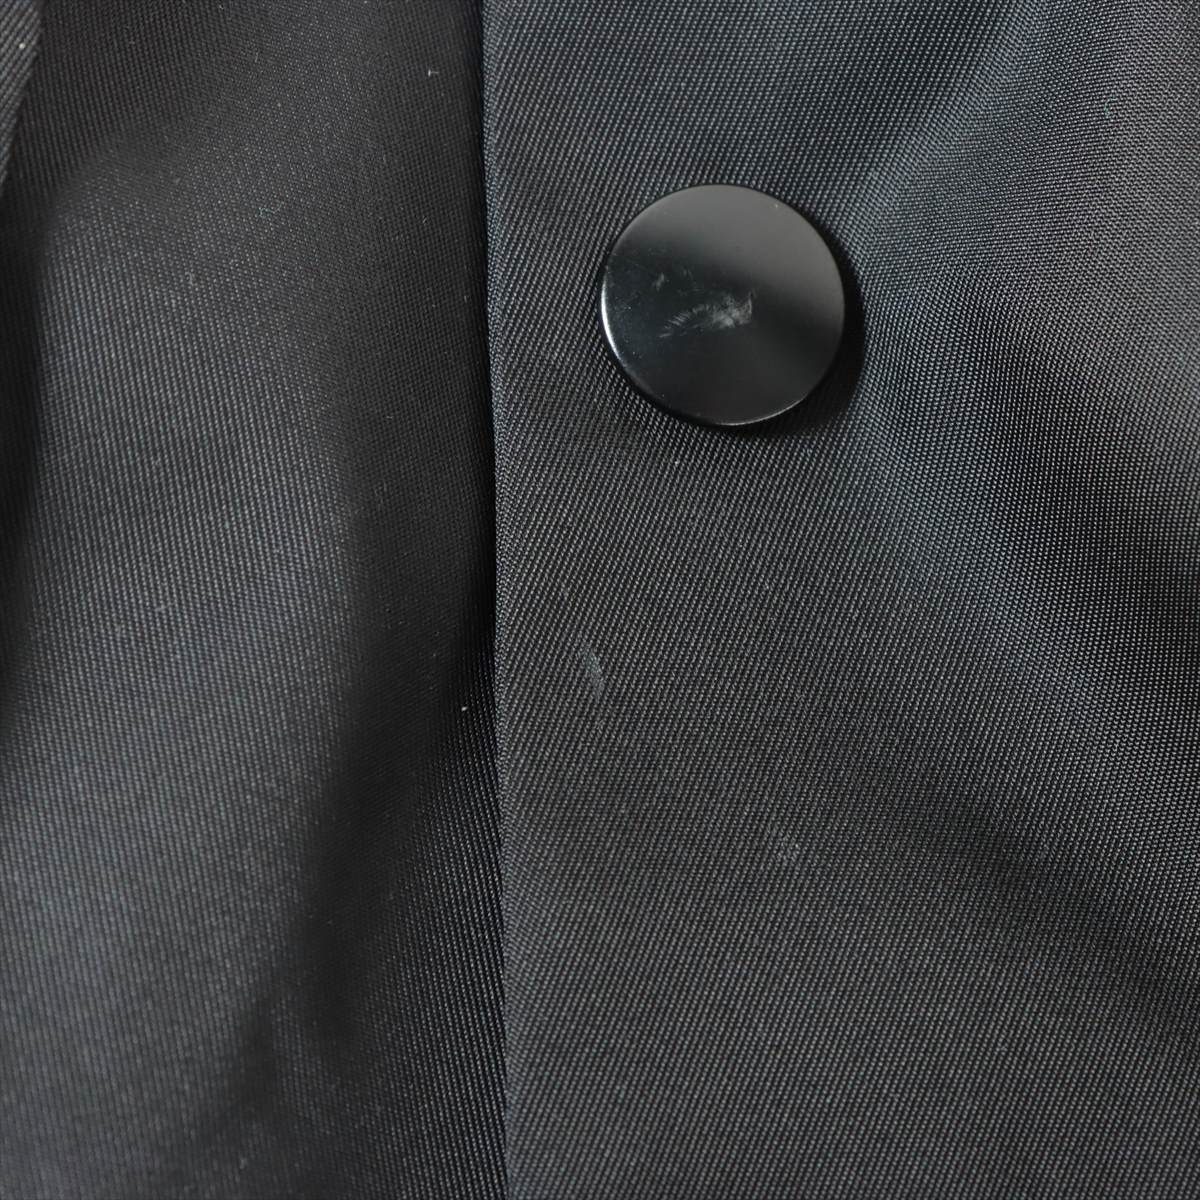 プラダ トライアングルロゴ 23年 ナイロン シャツ XS メンズ ブラック Re-Nylon ダブルポケットシャツ スナップボタン 2WA